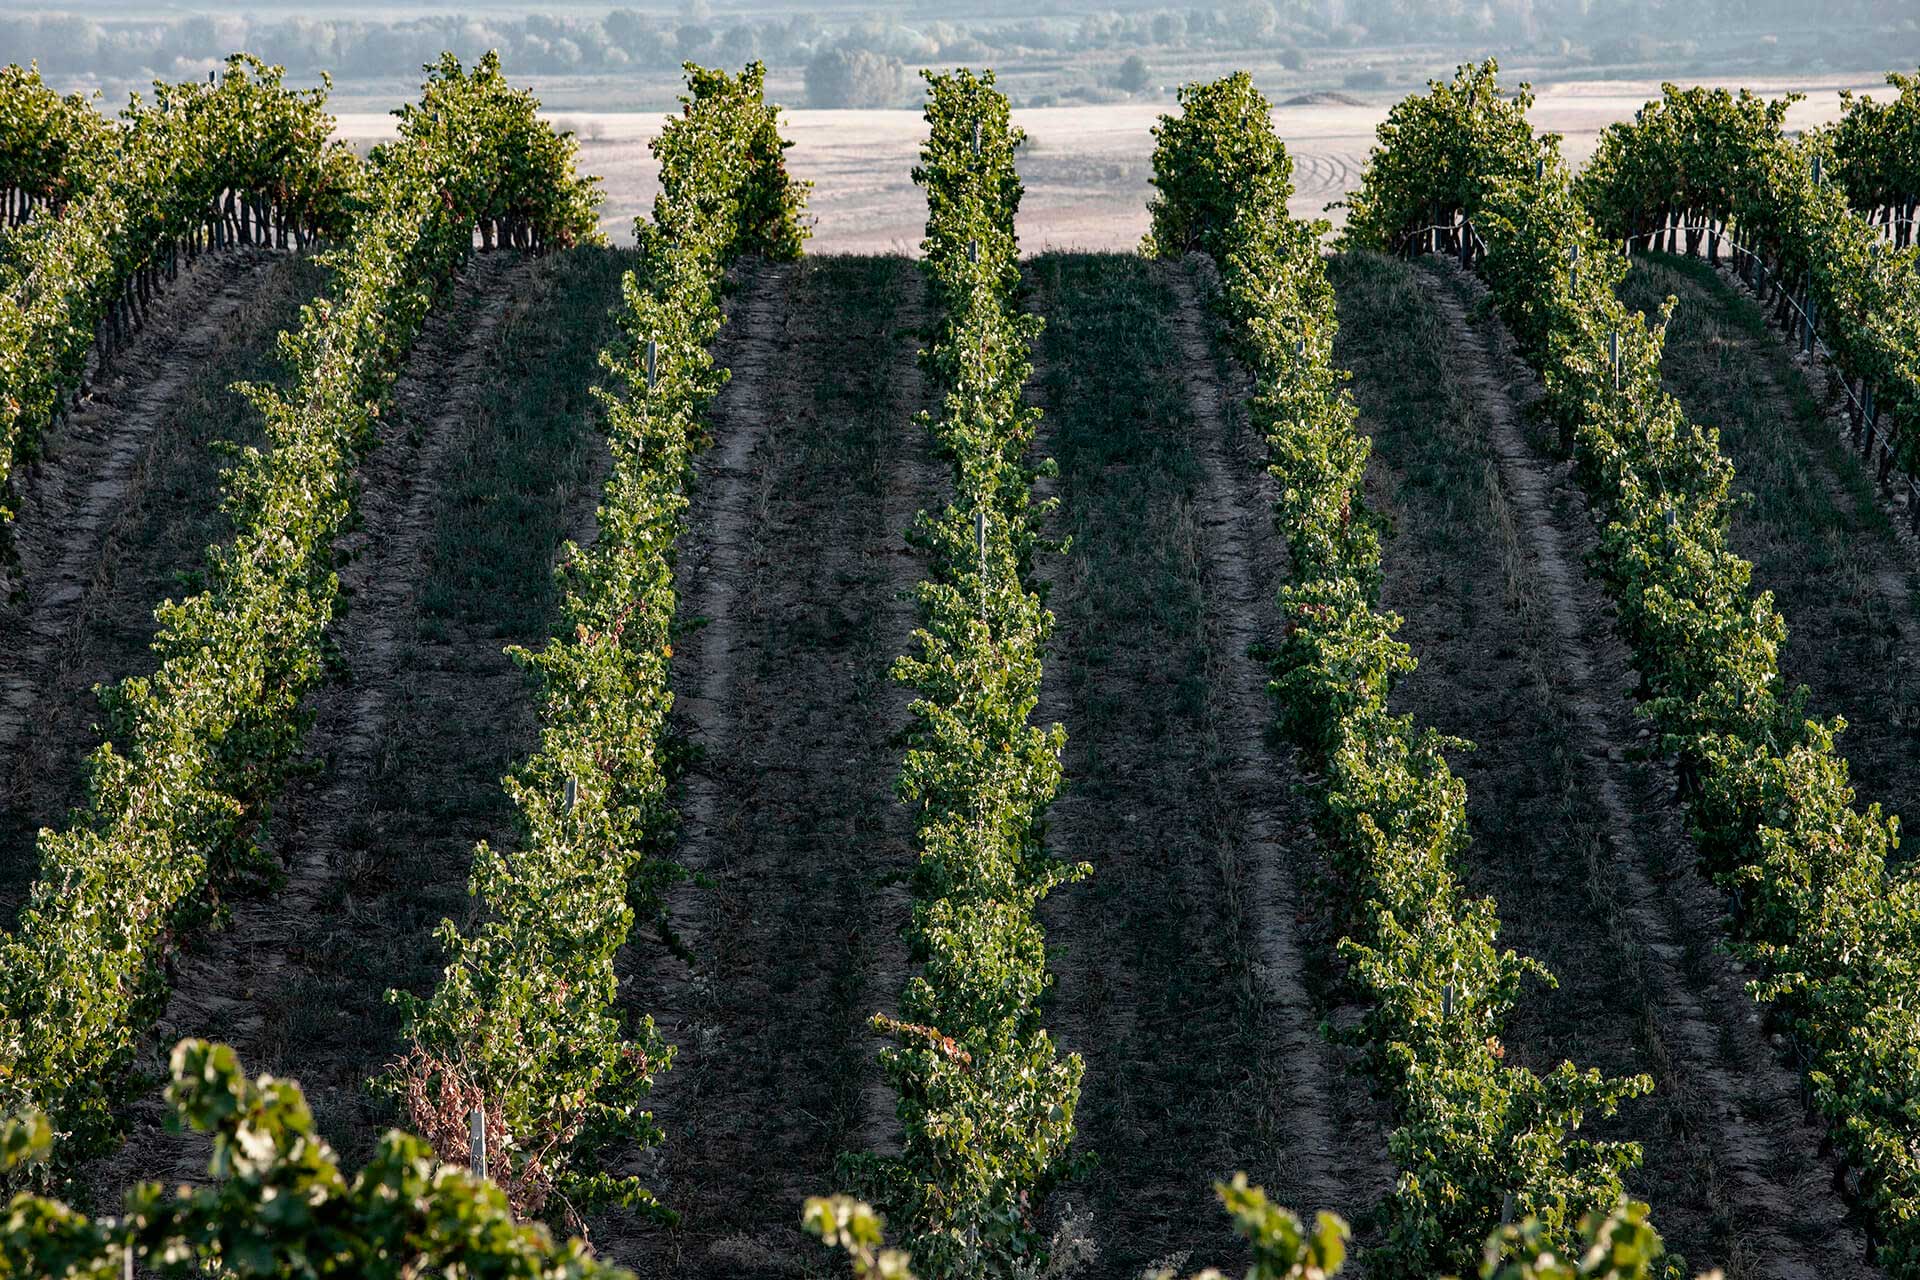 Crecimiento del viñedo propio hasta alcanzar más de 600 hectáreas